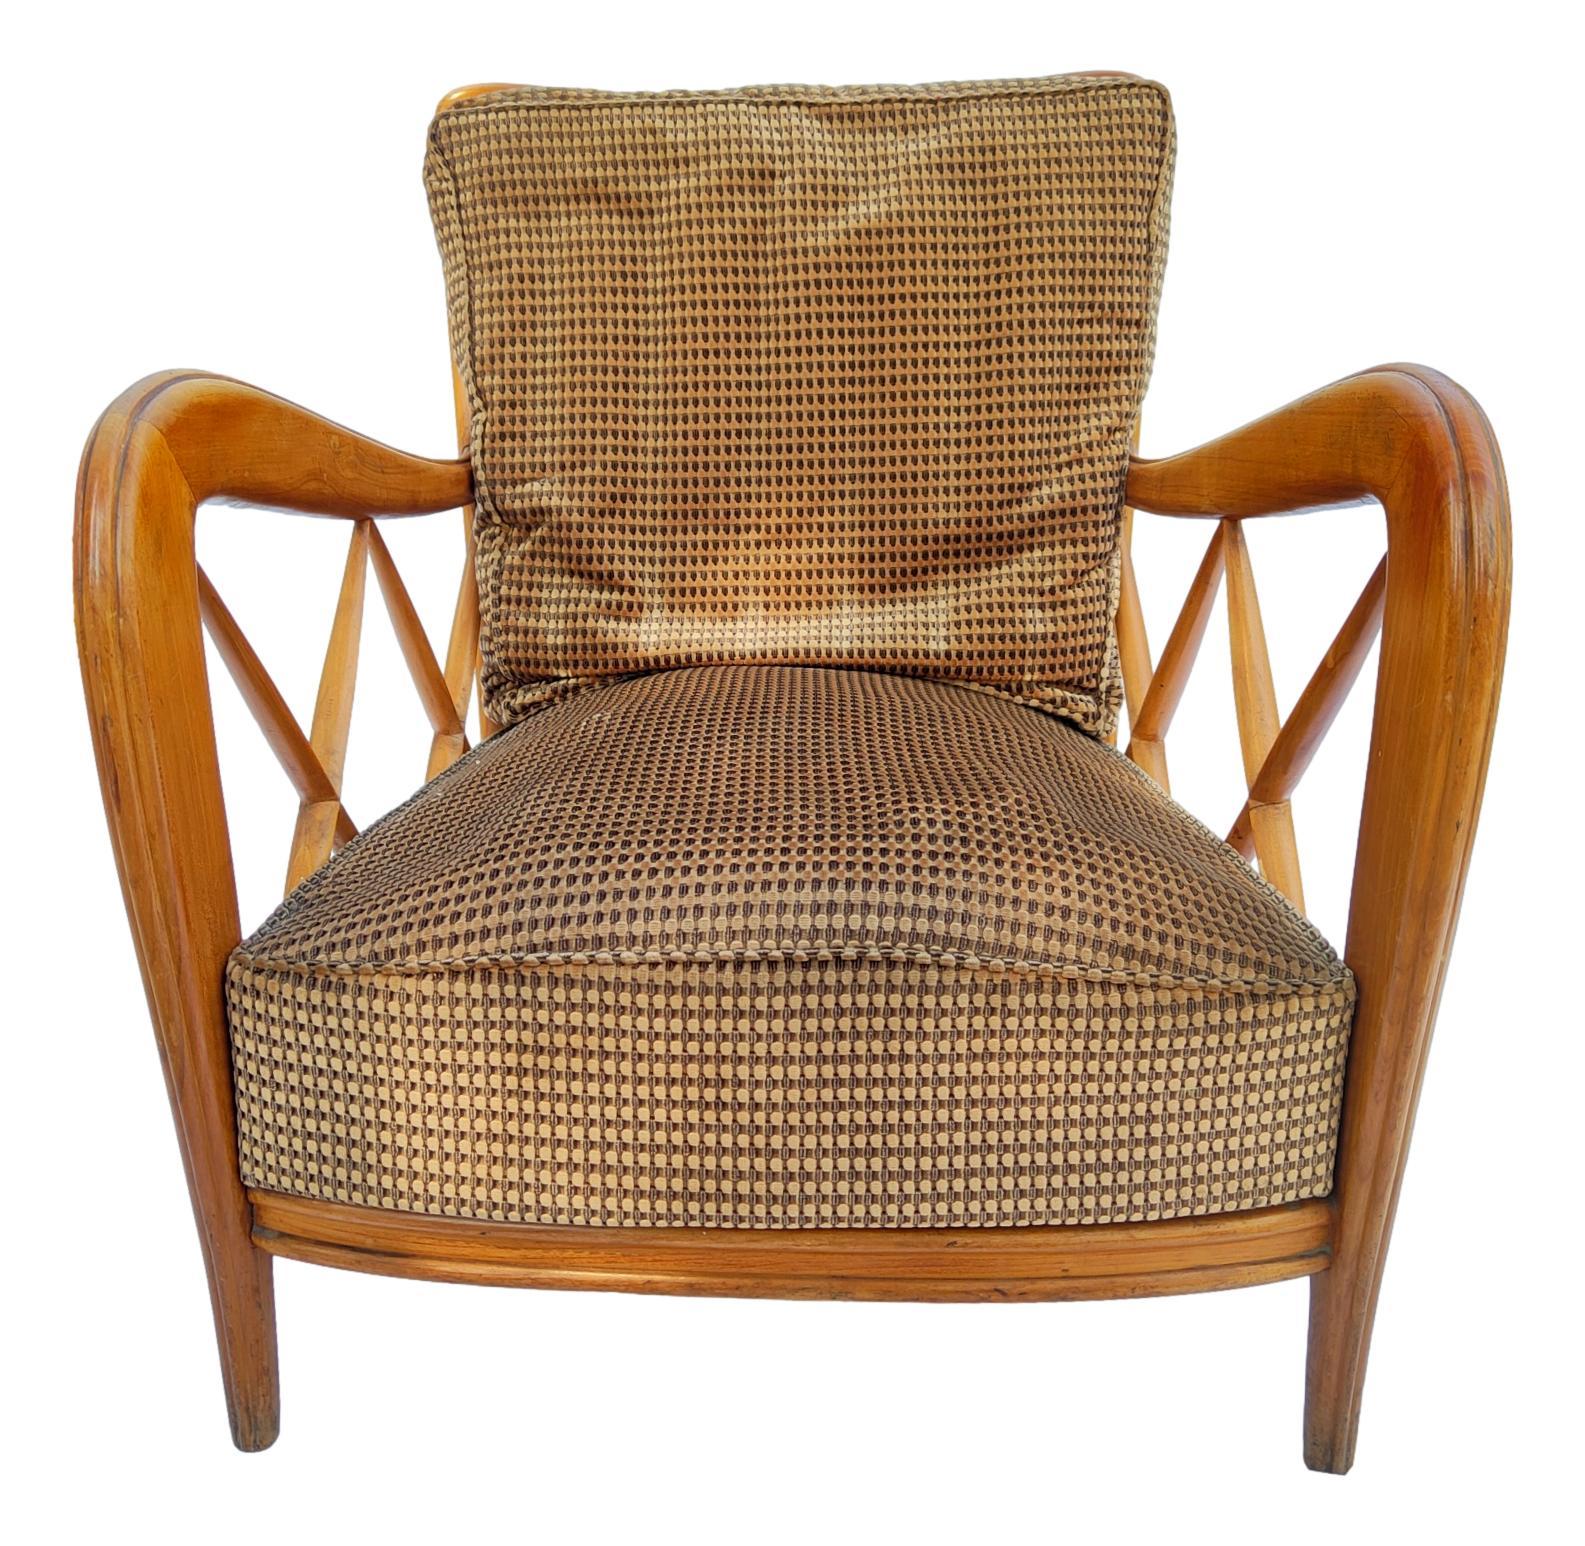 Magnifique paire de fauteuils italiens originaux des années 1950, conçus par Paolo Buffa, en bois avec assise et revêtement en velours à motifs beige et marron.

Ils mesurent 73 cm de hauteur, 62 cm de largeur et 70 cm de profondeur, en très bon